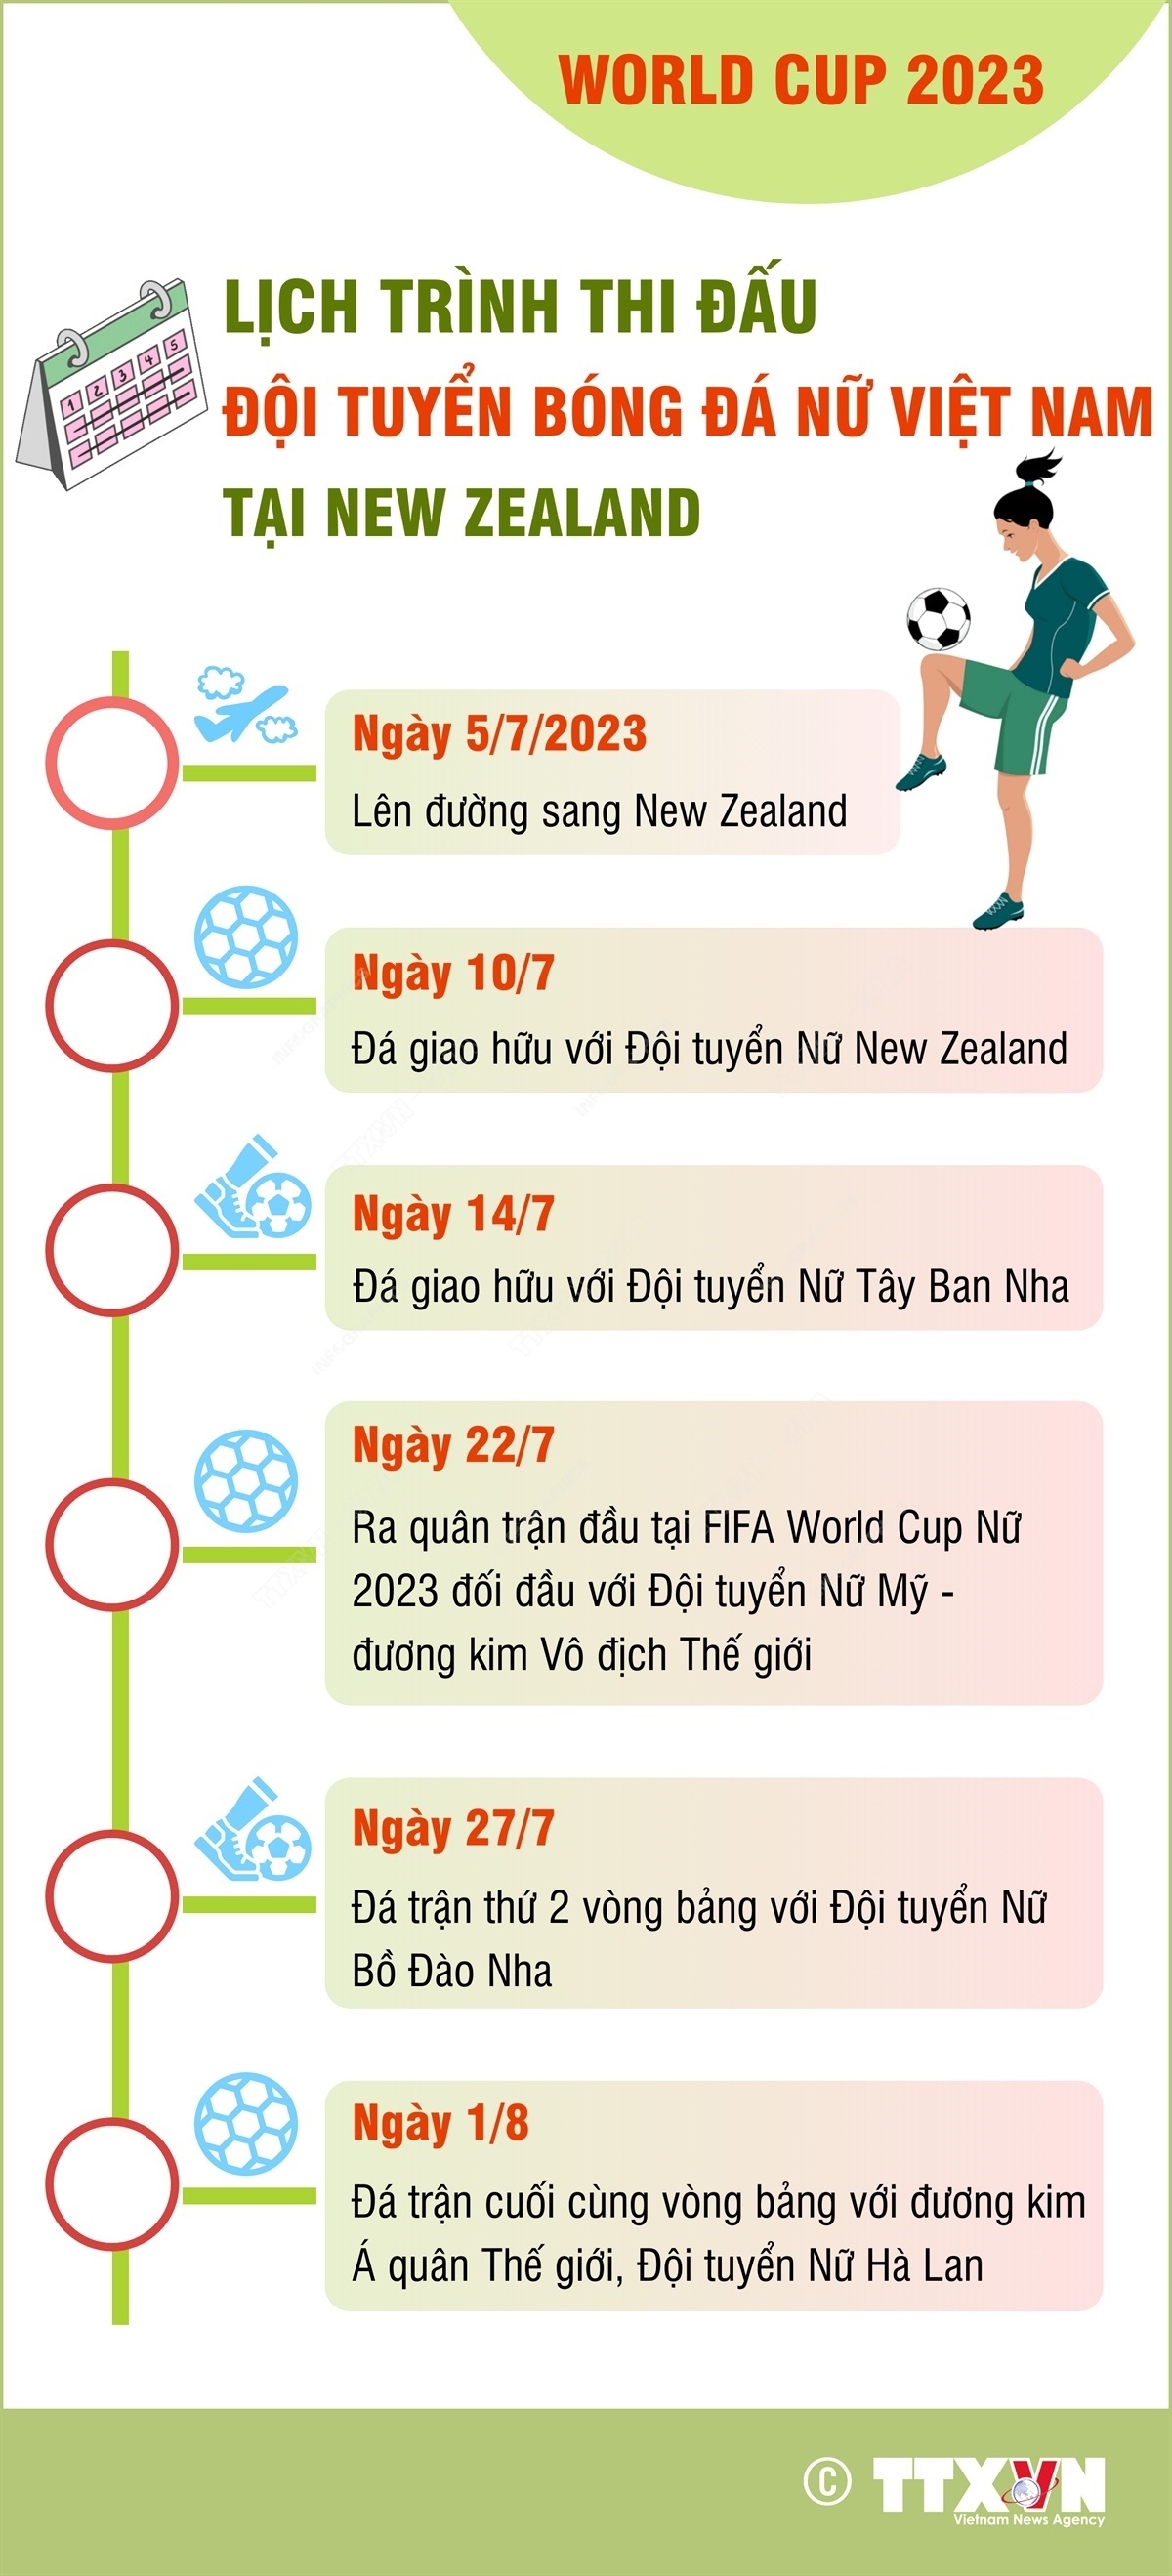 (dẫn nguồn) World Cup 2023: Lịch trình thi đấu của Đội tuyển bóng đá nữ Việt Nam